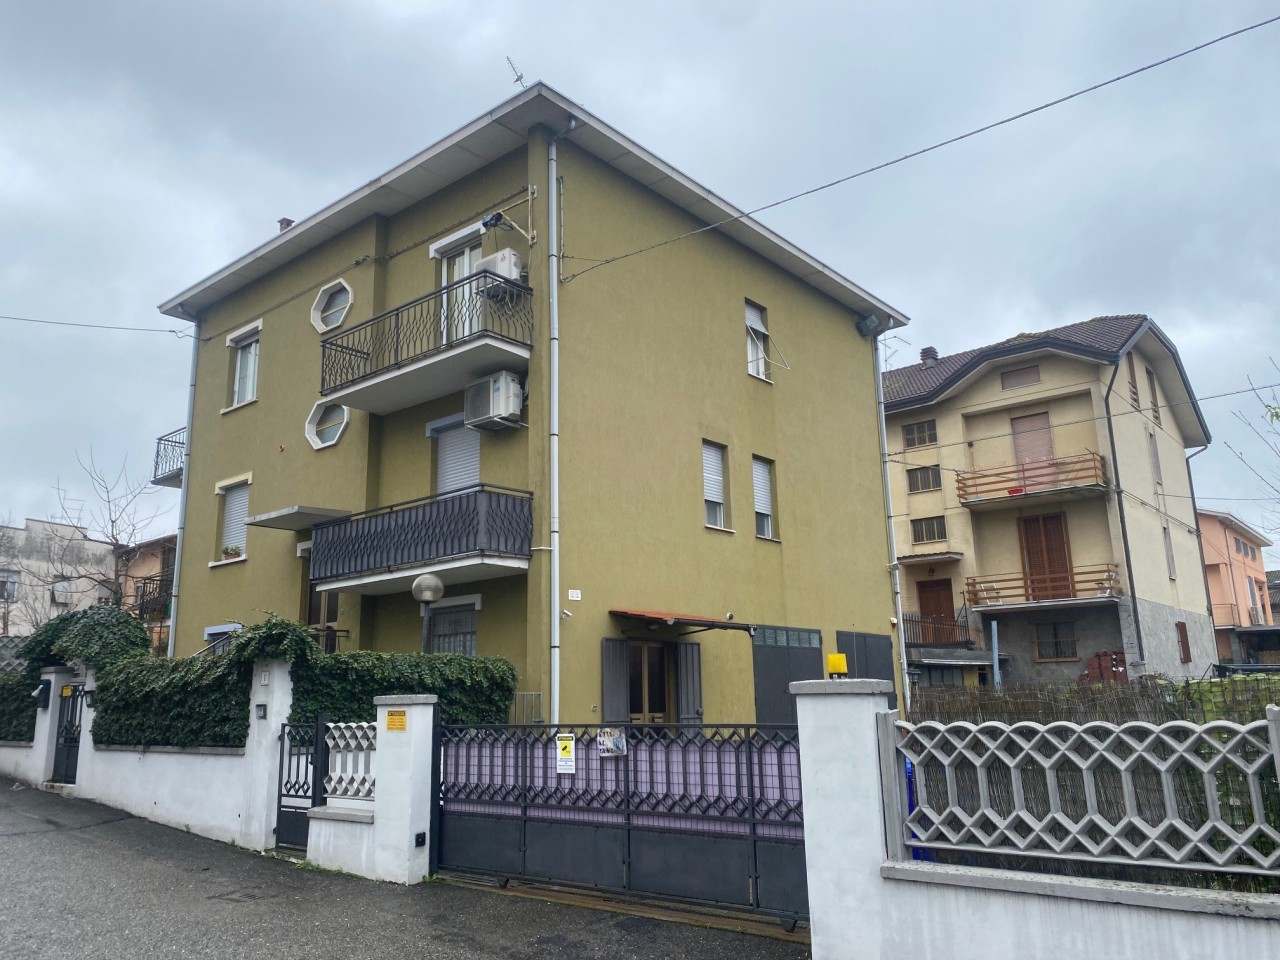 Appartamento in vendita a Medesano, 4 locali, prezzo € 158.000 | PortaleAgenzieImmobiliari.it